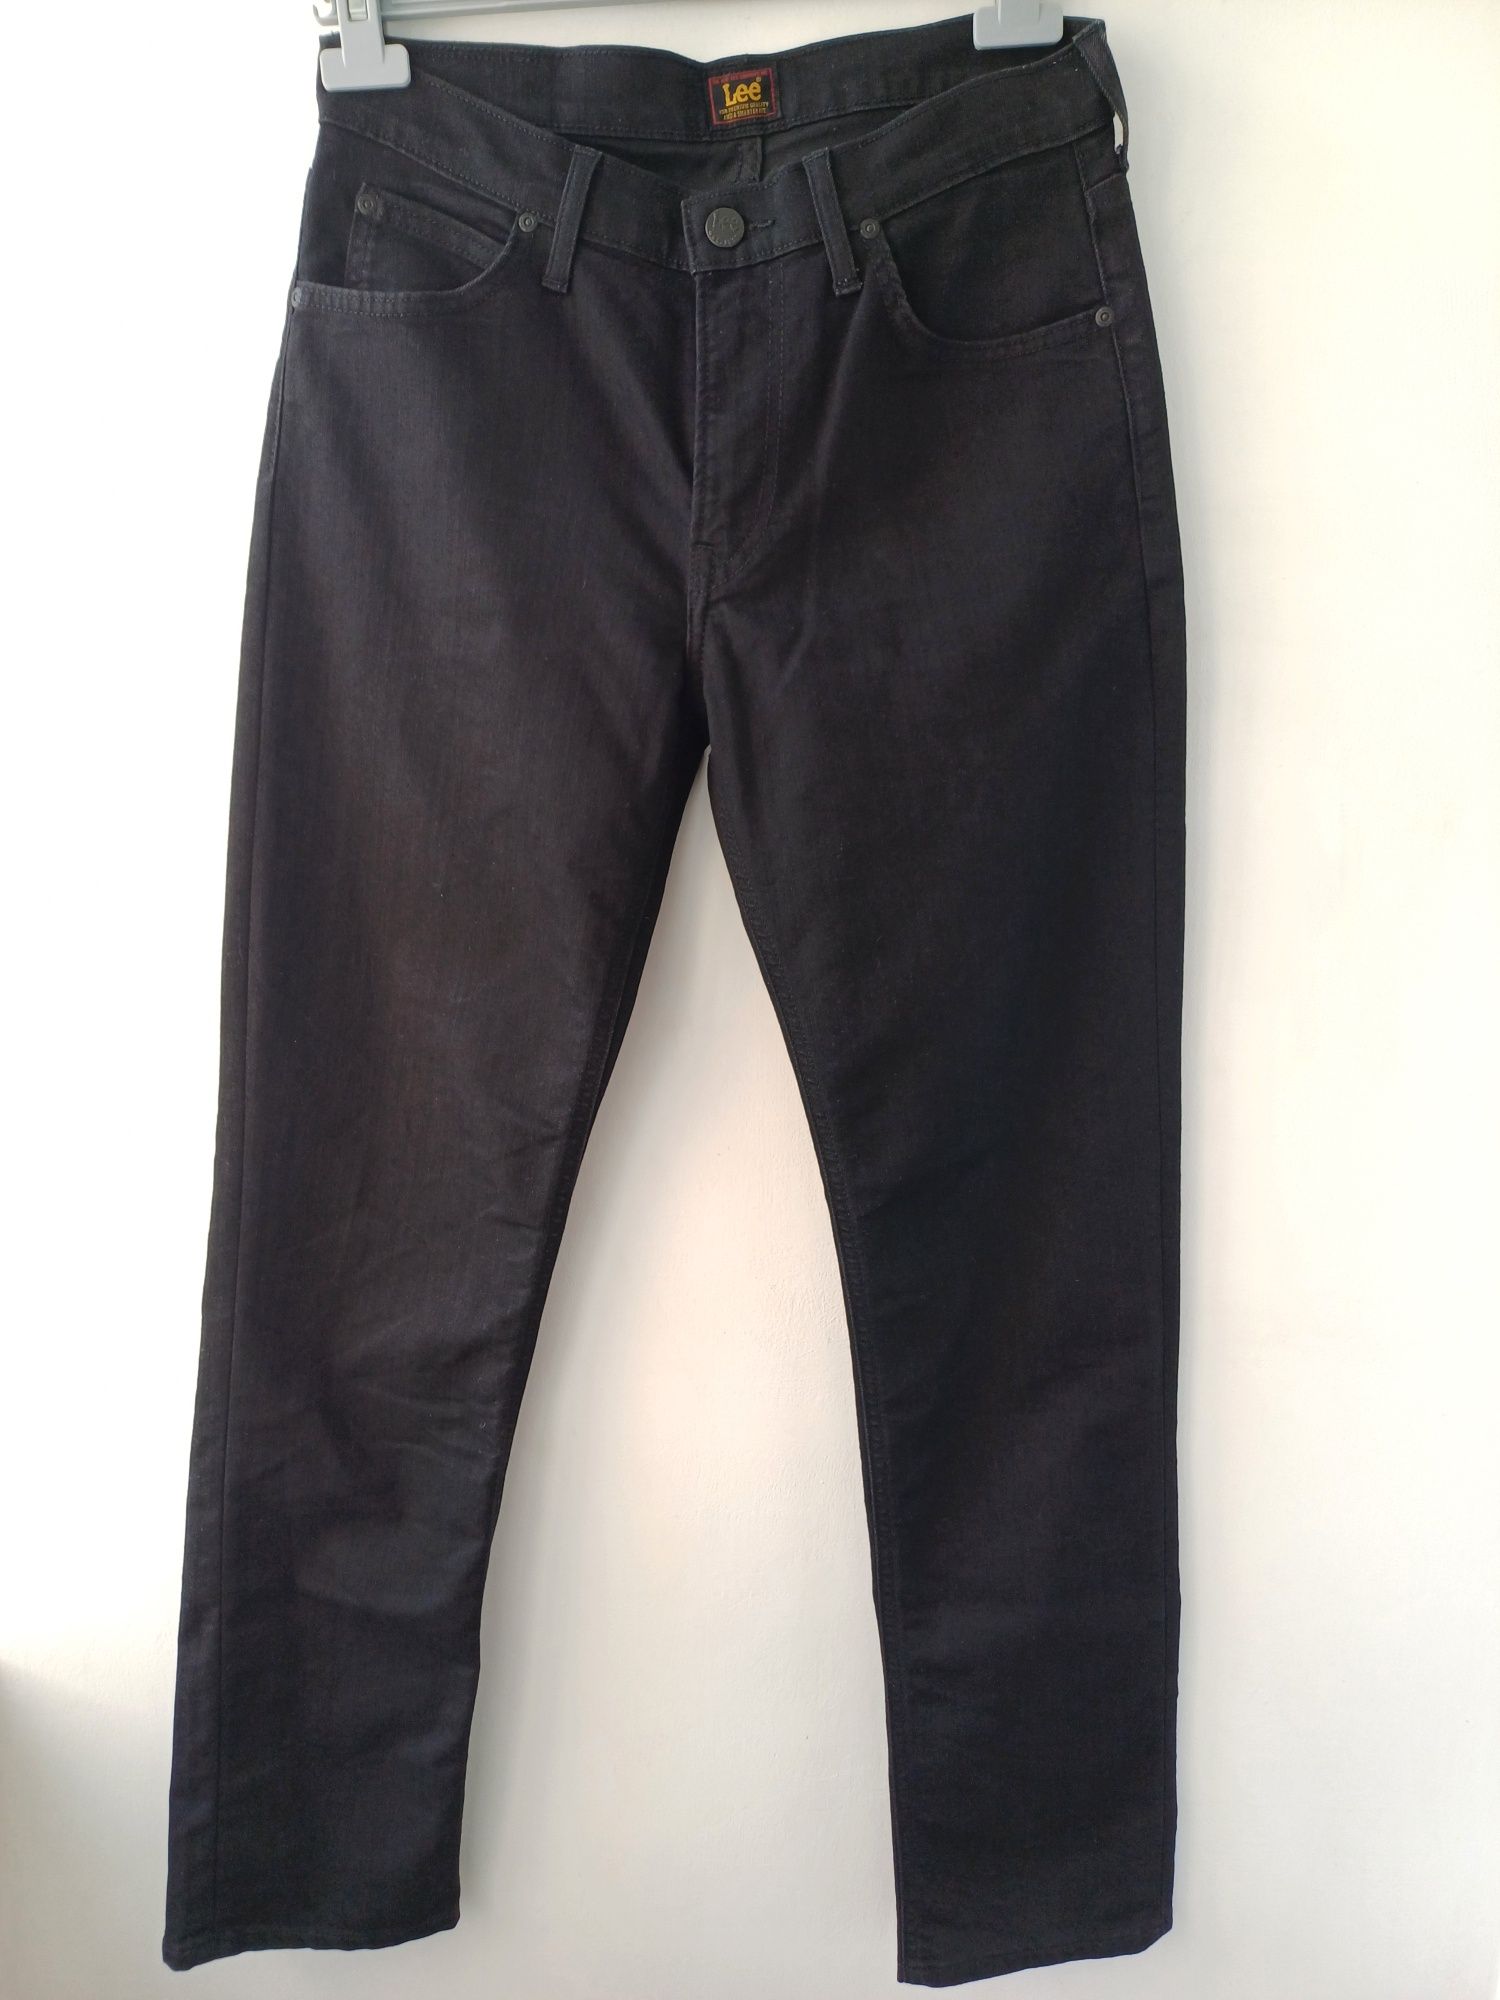 Лёгкие зауженные джинсы Lee (оригинал) мужские W30 L32